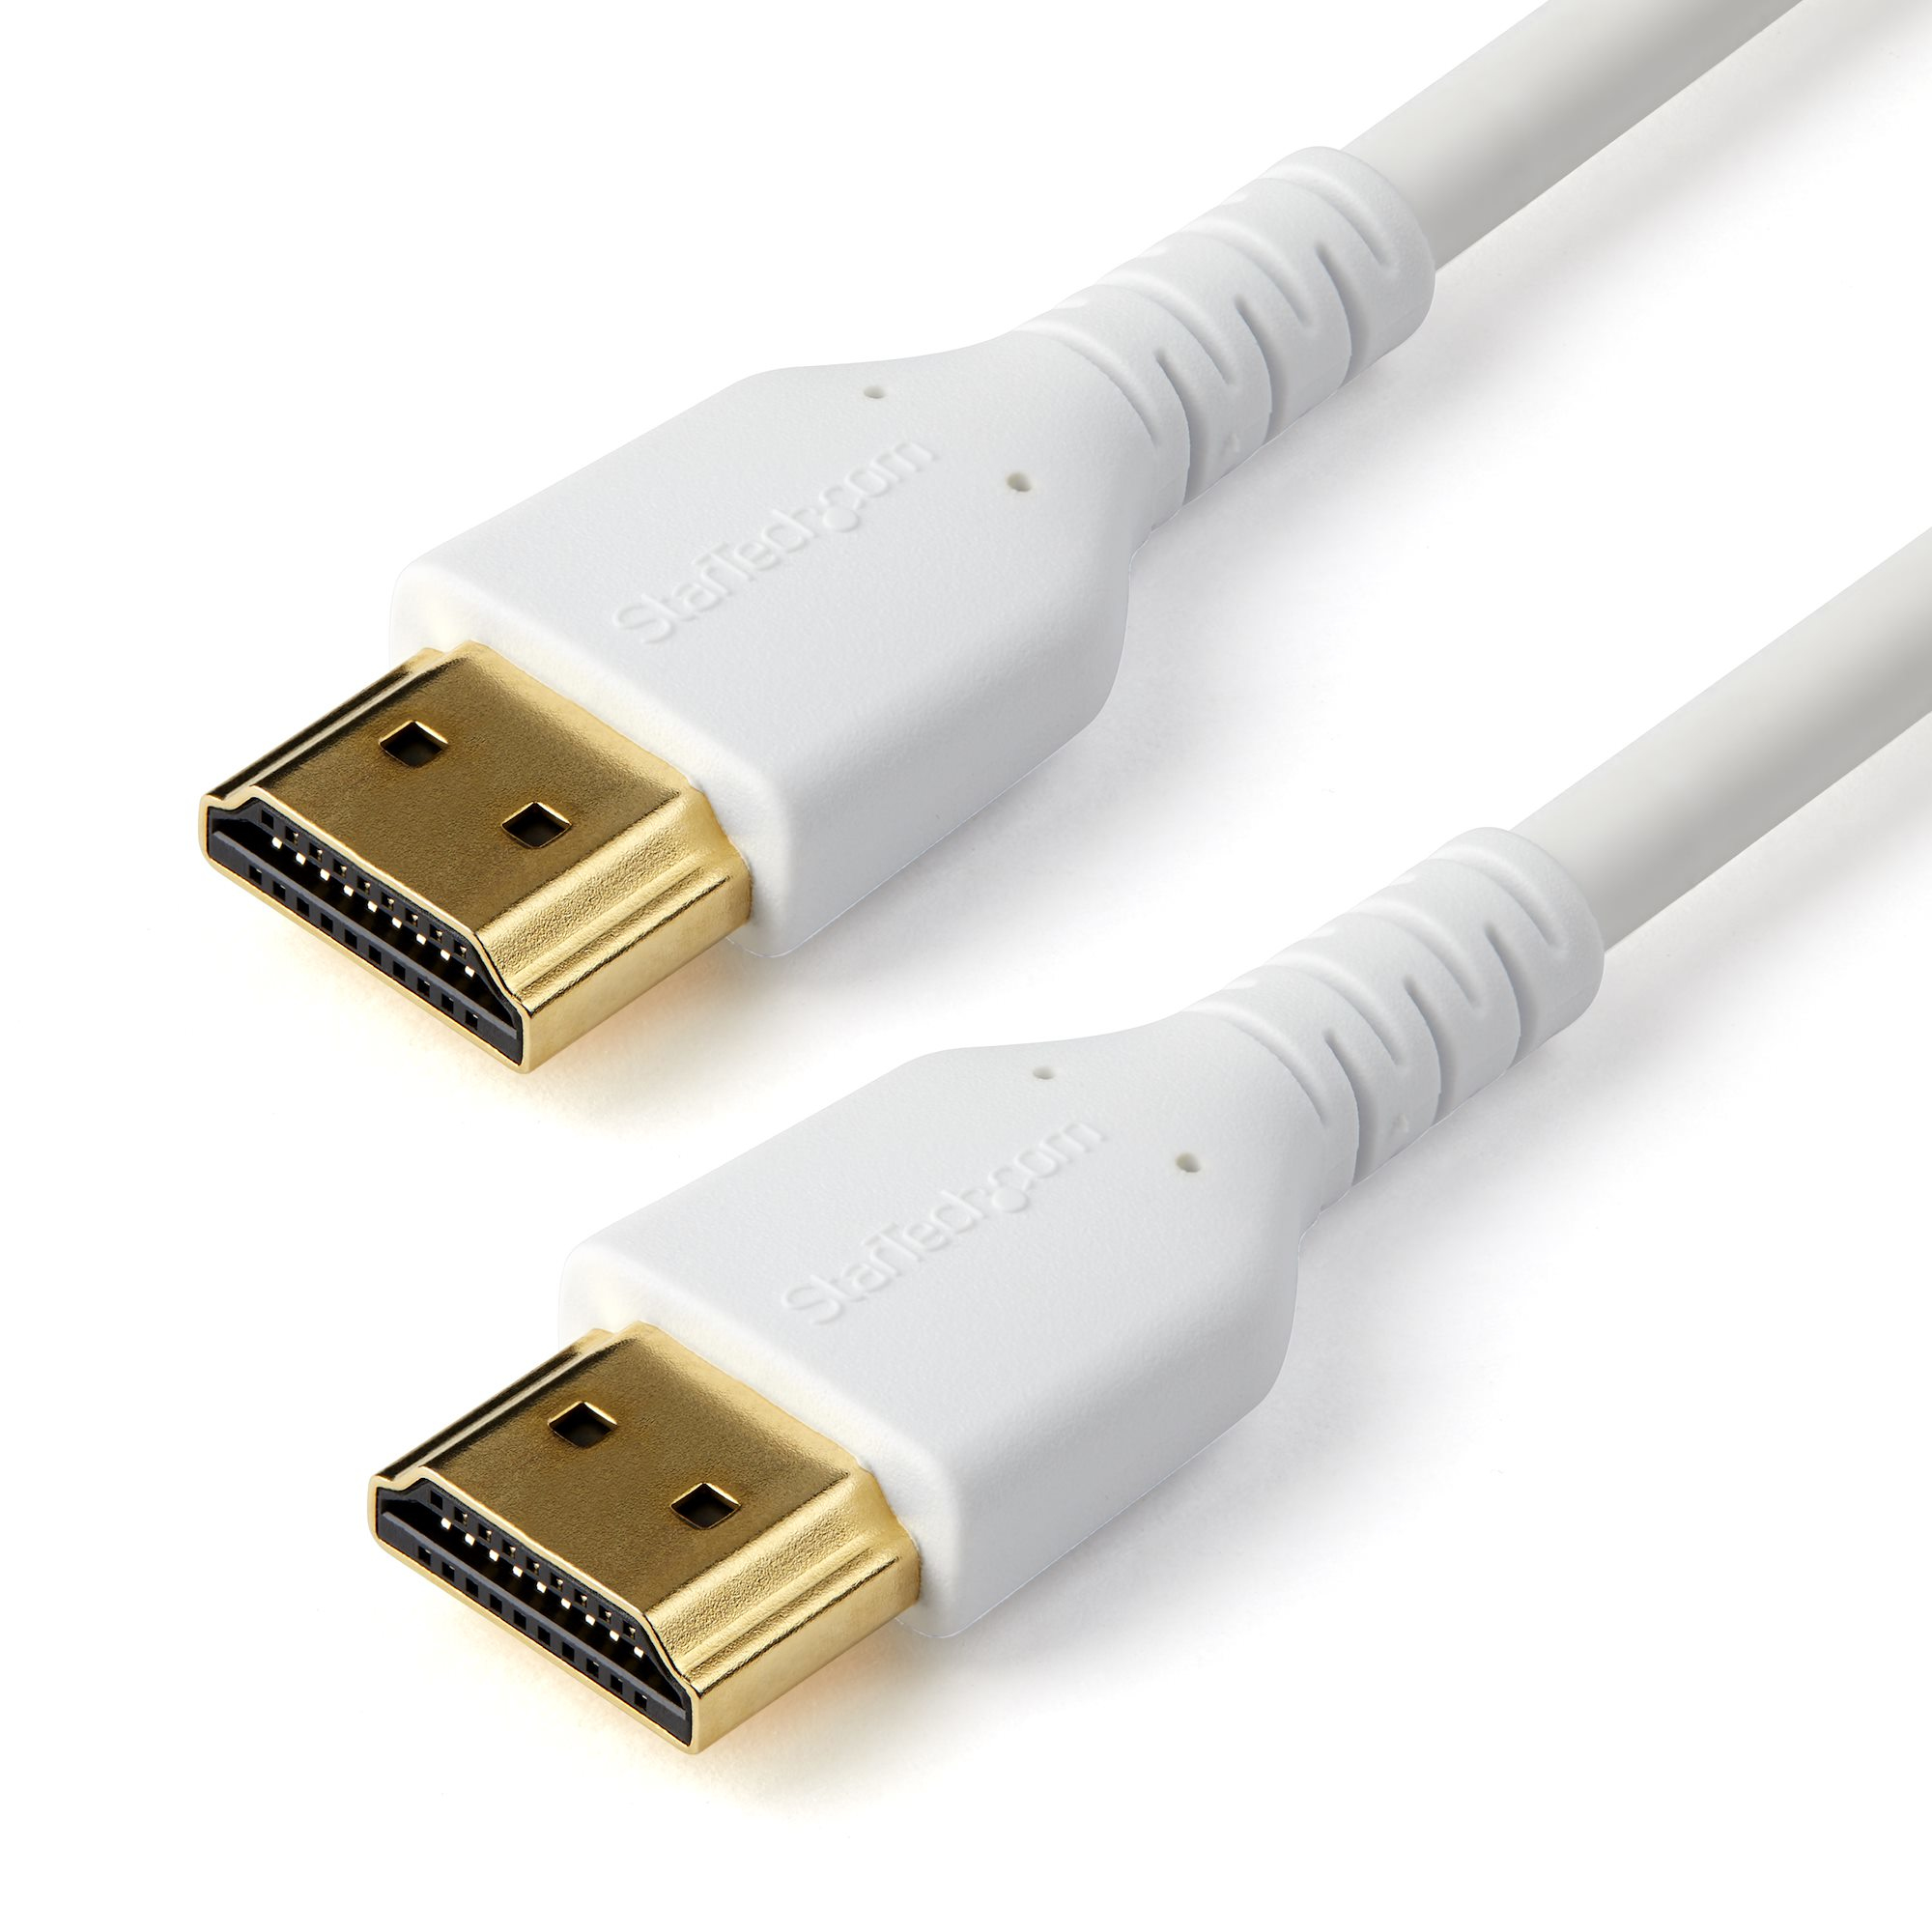 StarTech.com 1m Premium Zertifiziertes HDMI 2.0 Kabel mit Ethernet - High Speed UHD 4K 60Hz HDR - Robustes M/M HDMI Verbindungsabel mit Aramidfaser - TPE - Für UHD Monitoren/TVs/Displays - 1 m - HDMI Typ A (Standard) - HDMI Typ A (Standard) - Audio Return Channel (ARC